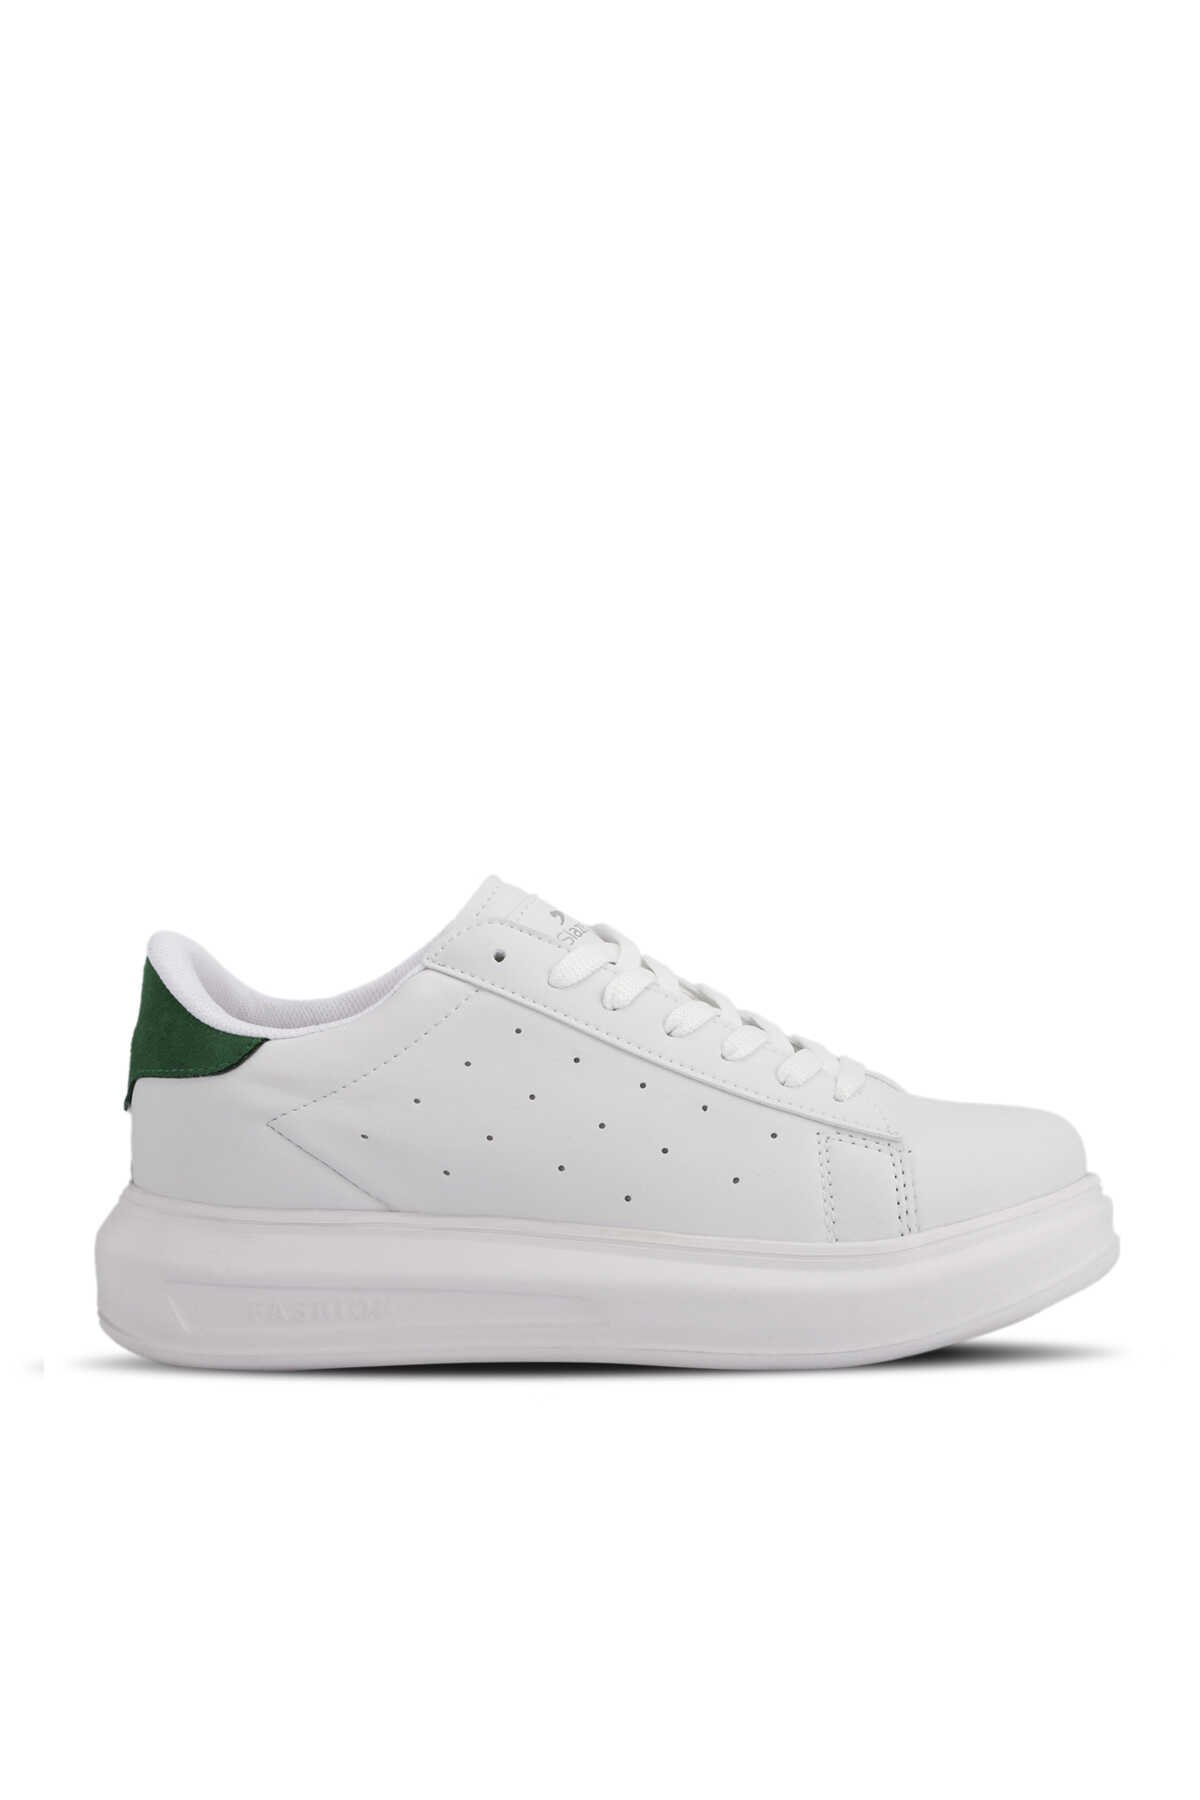 Slazenger - Slazenger ZARATHUSTRA Sneaker Kadın Ayakkabı Beyaz / Yeşil